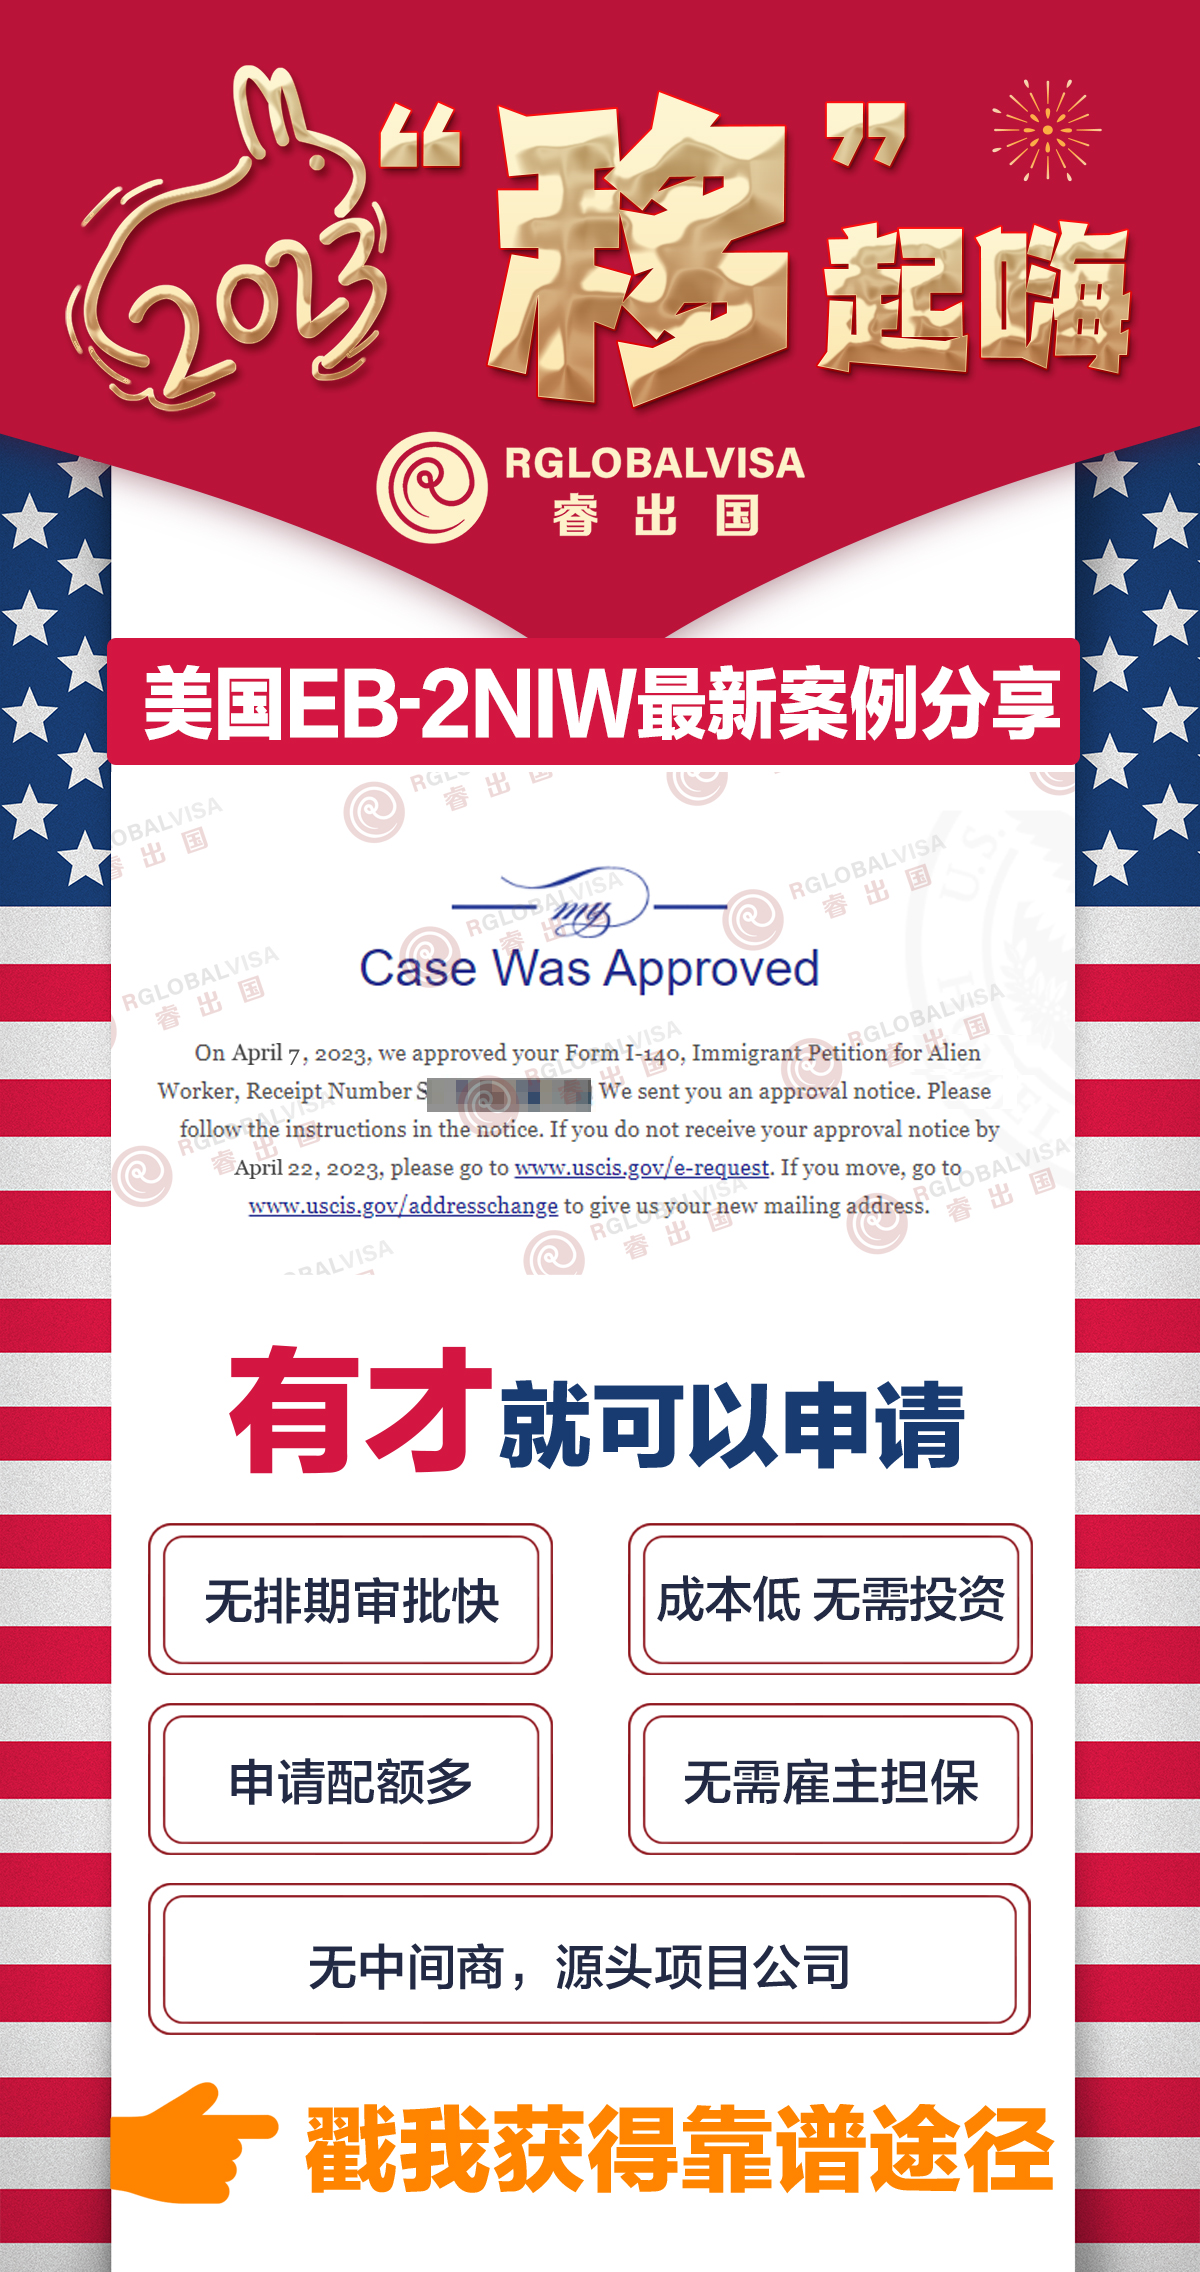 恭喜美国EB-2NIW国家豁免项目